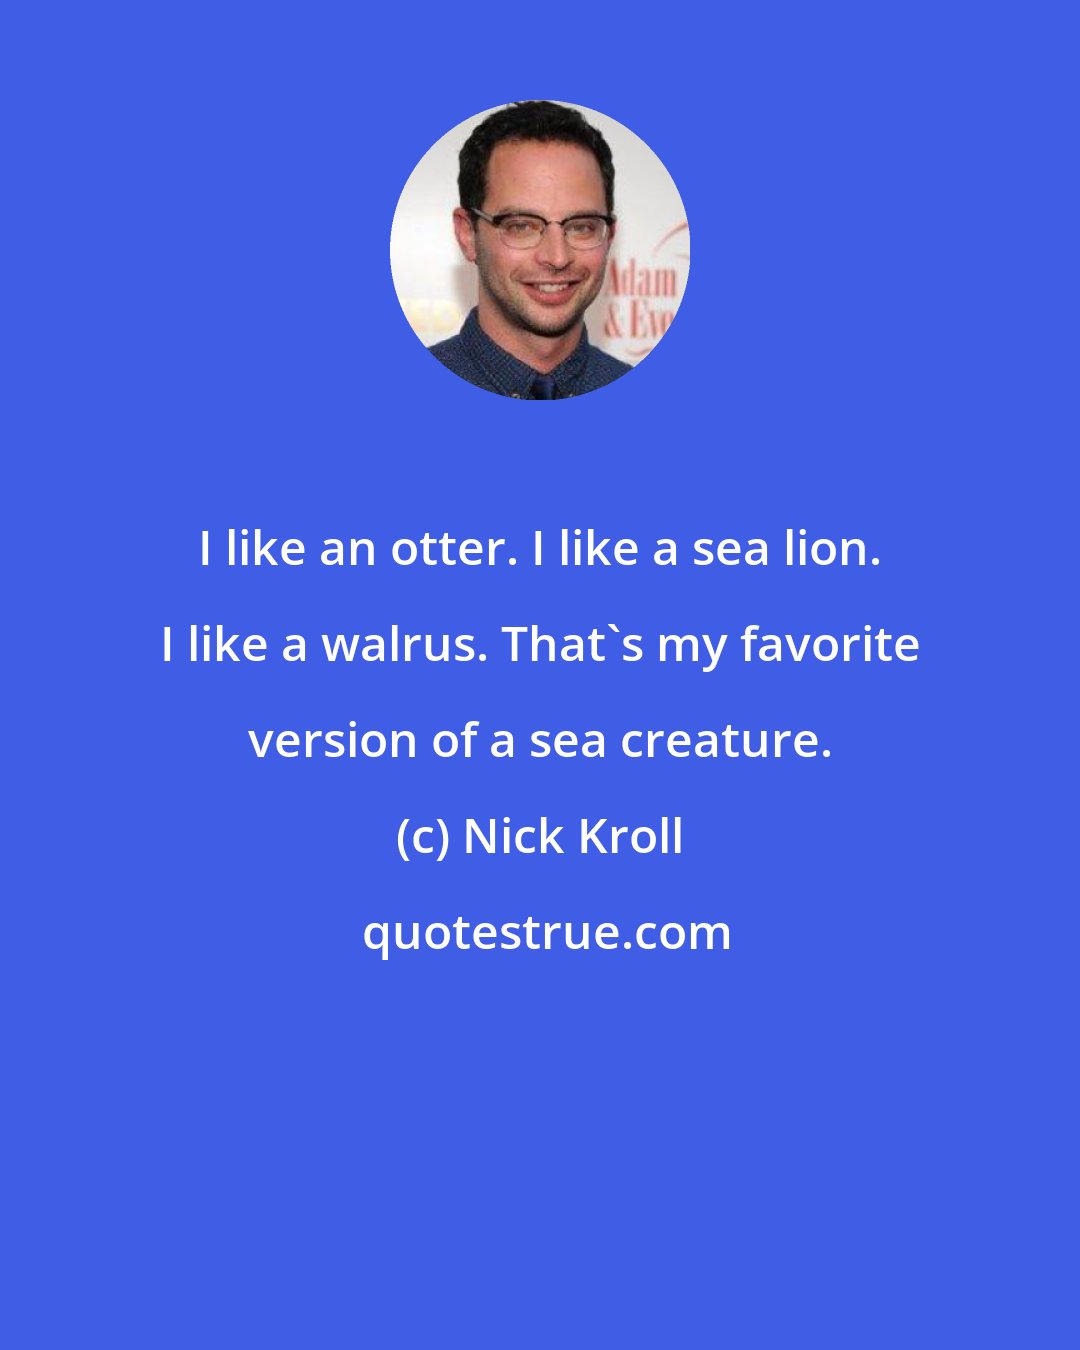 Nick Kroll: I like an otter. I like a sea lion. I like a walrus. That's my favorite version of a sea creature.